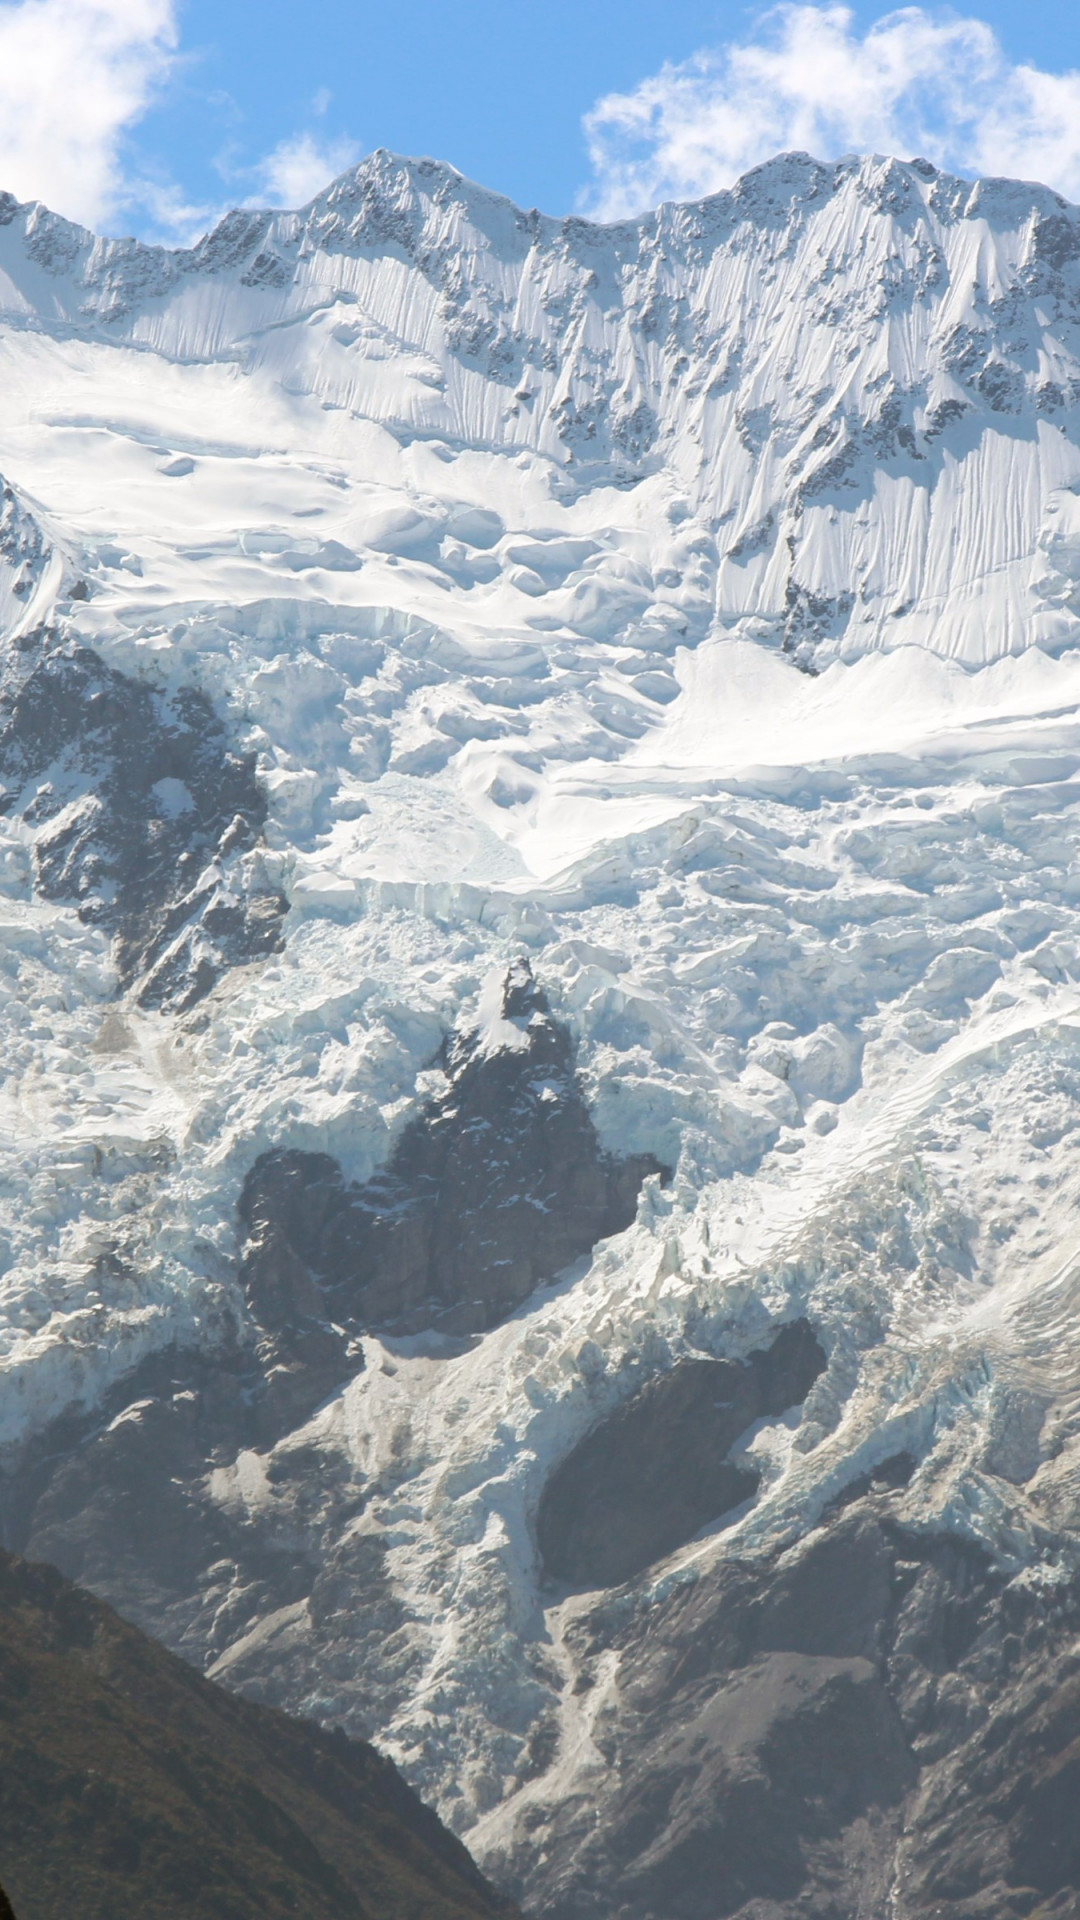 Hooker glacier from Aoraki, New Zealand wallpaper 1080x1920